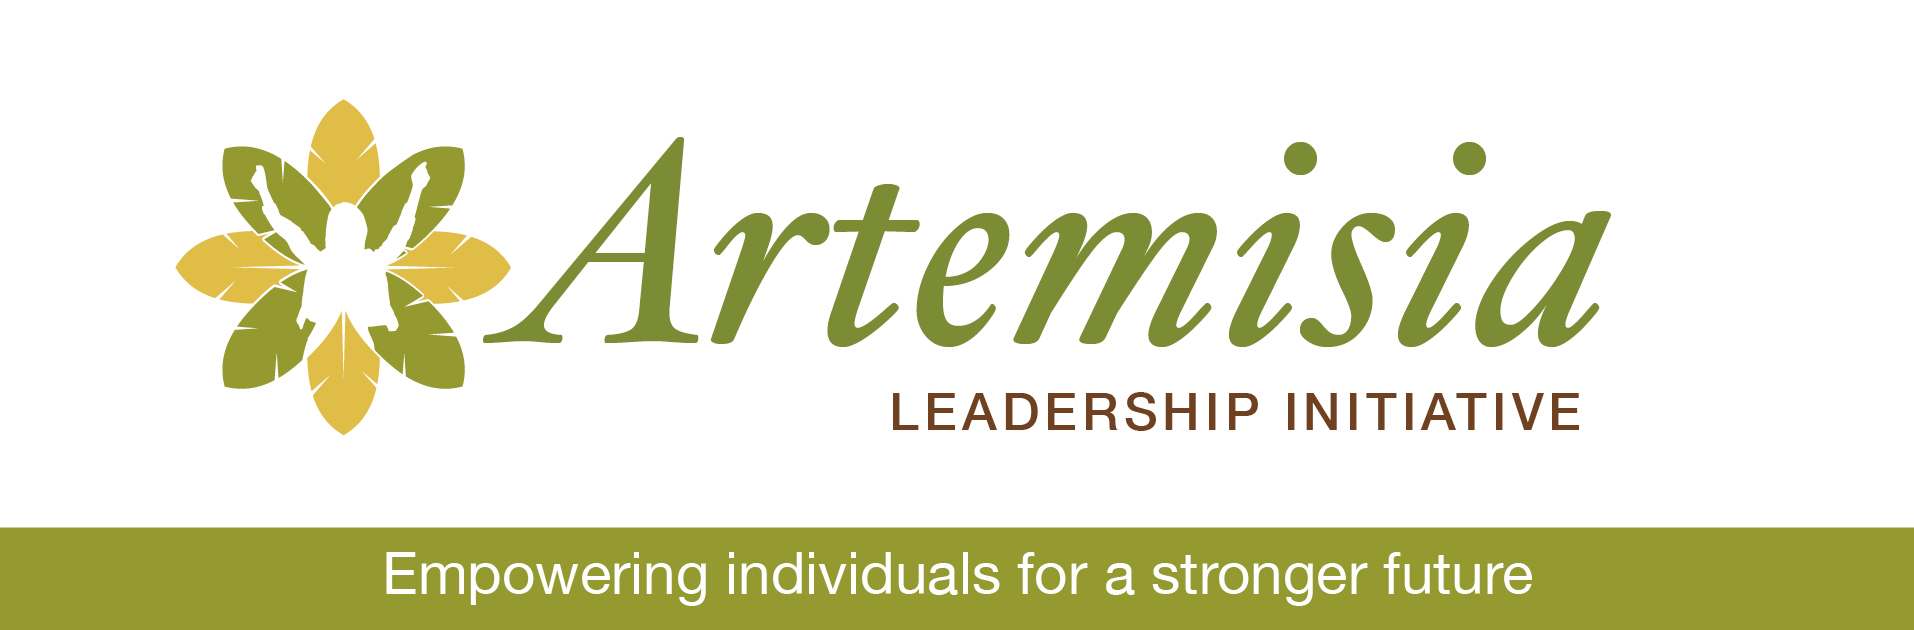 Artemisia Leadership Initiative